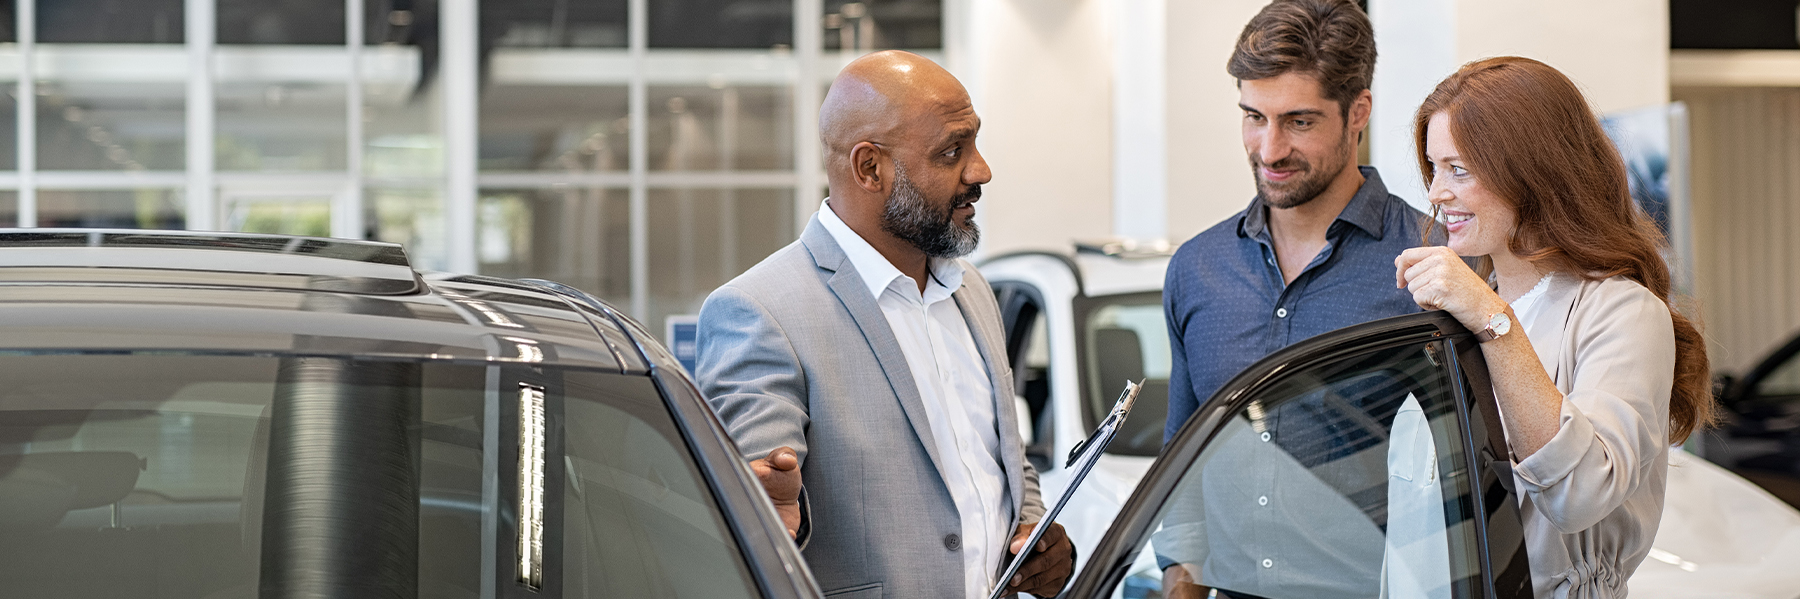 Garantiesachbearbeiter mit Kunden in der Beratung an einem Fahrzeug mit offener Fahrertür.